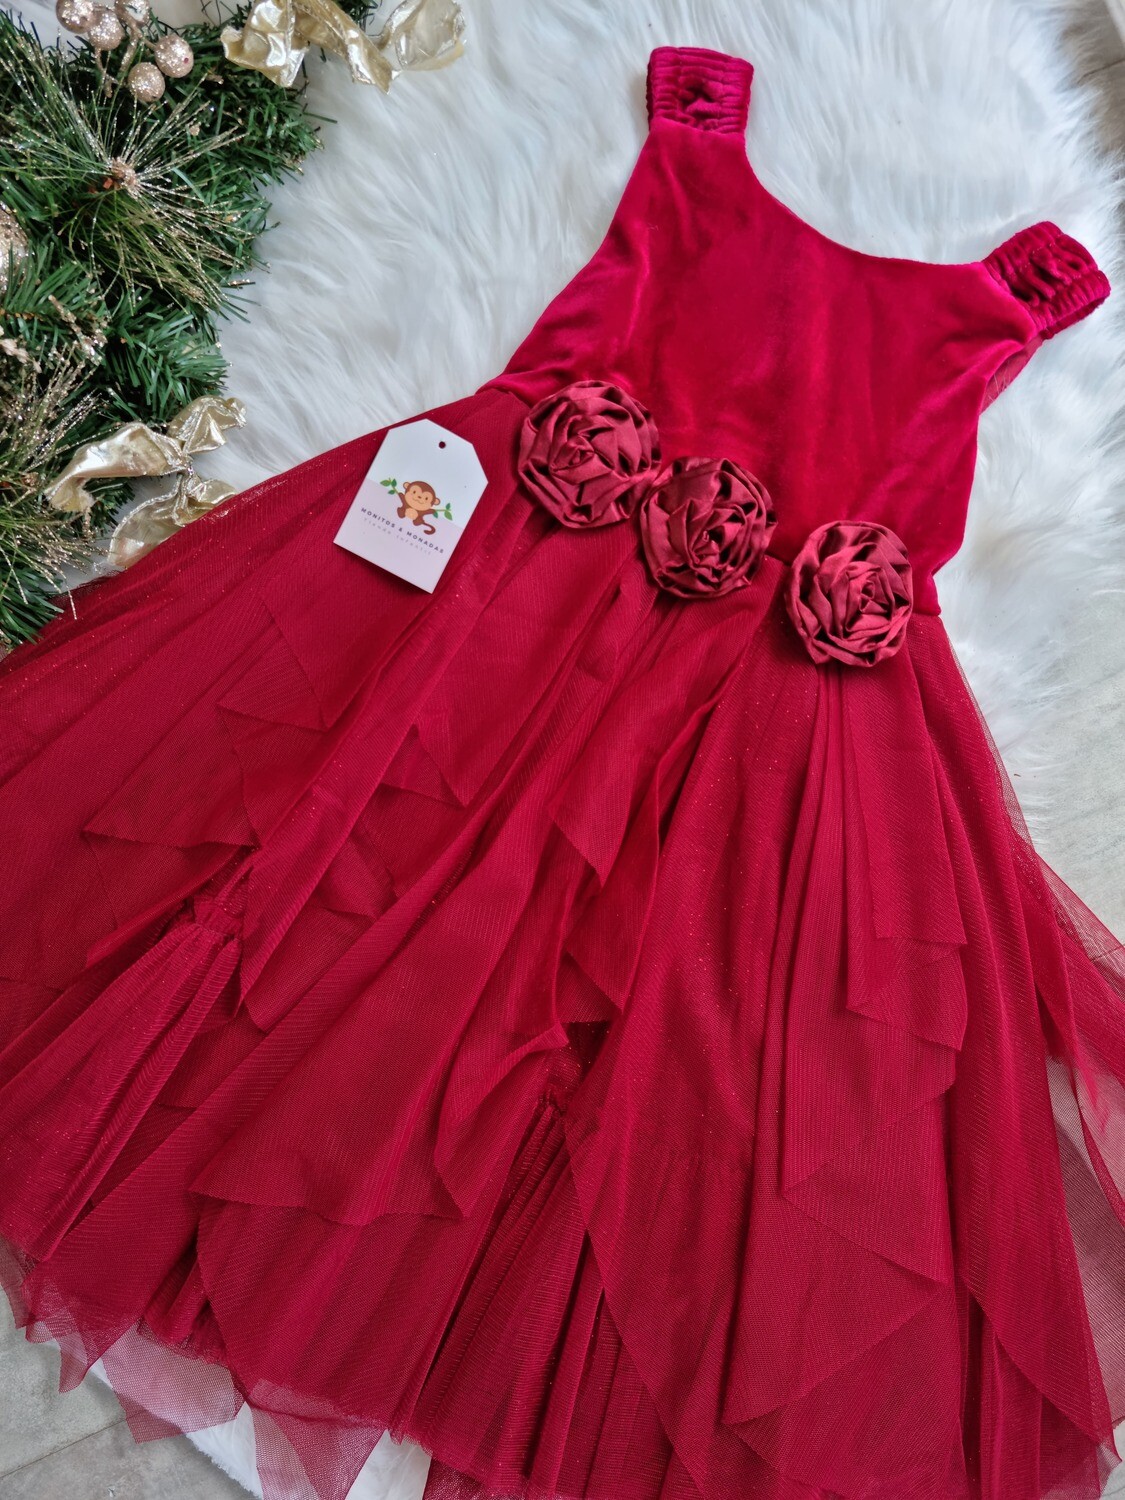 Vestido rojo, detalle de rosas, Couture Princess, 4 años